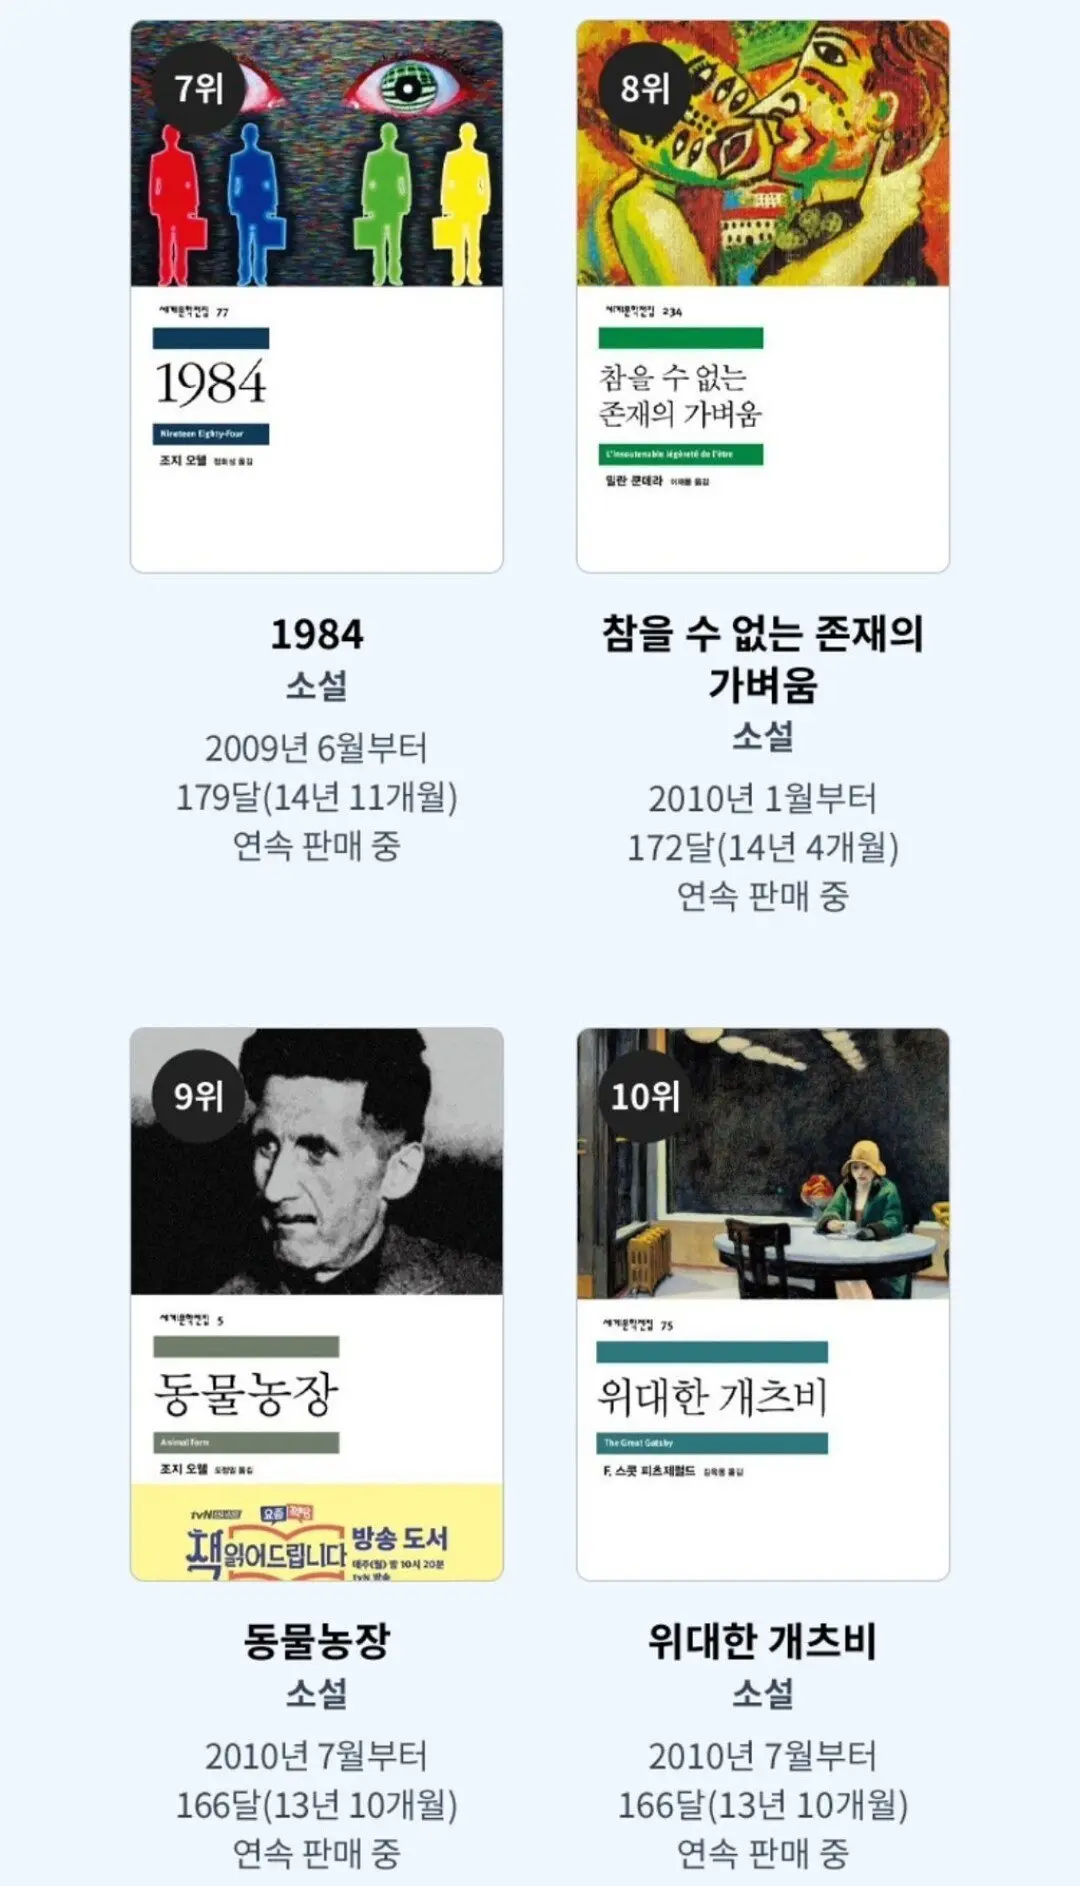 교보문고에서 뽑은 매달 100권 이상 꾸준히 팔리는 책 순위 | mbong.kr 엠봉